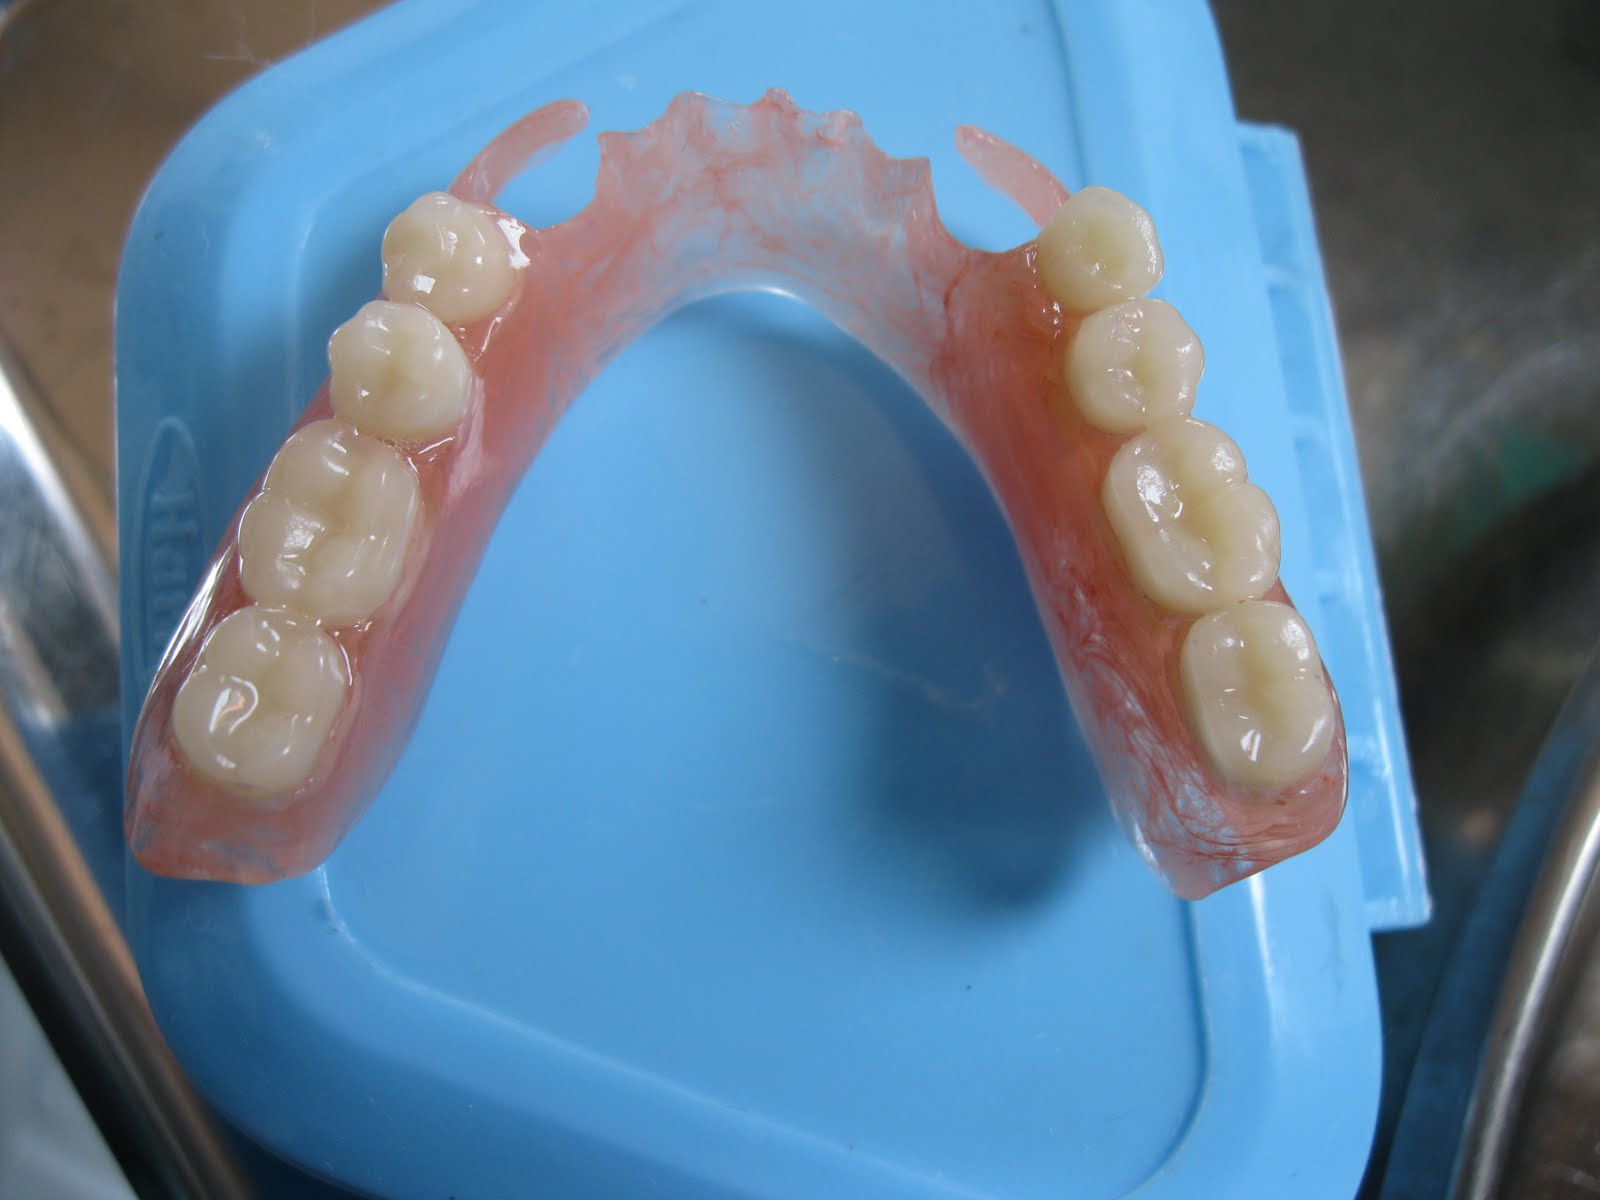 Съемный протез (6-14 зубов) термо Джет